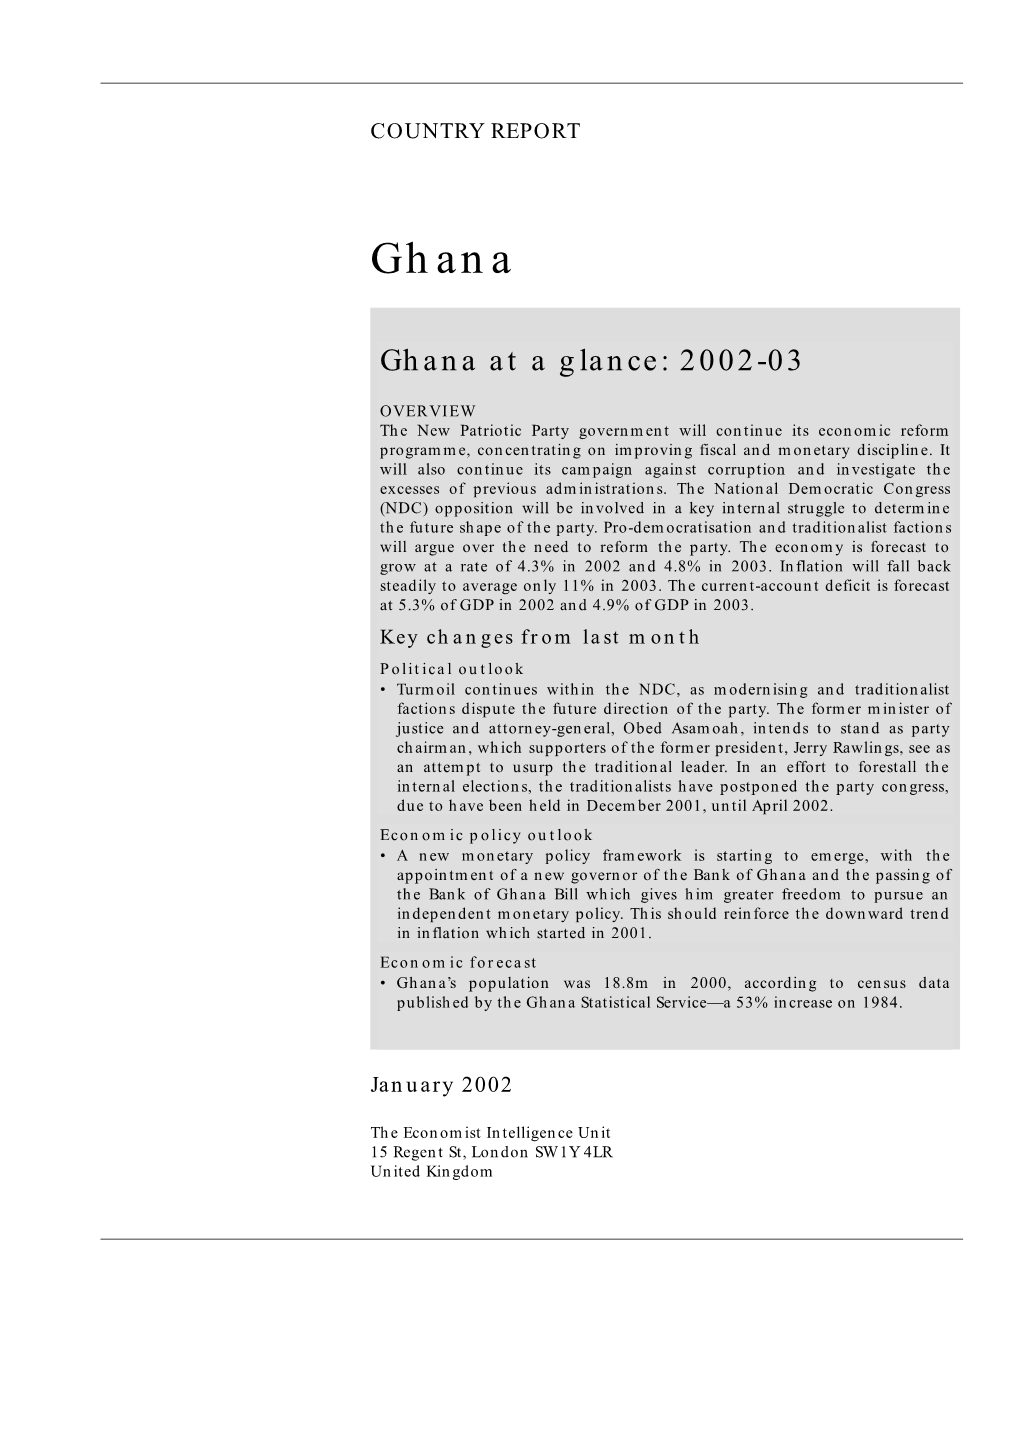 Ghana at a Glance: 2002-03